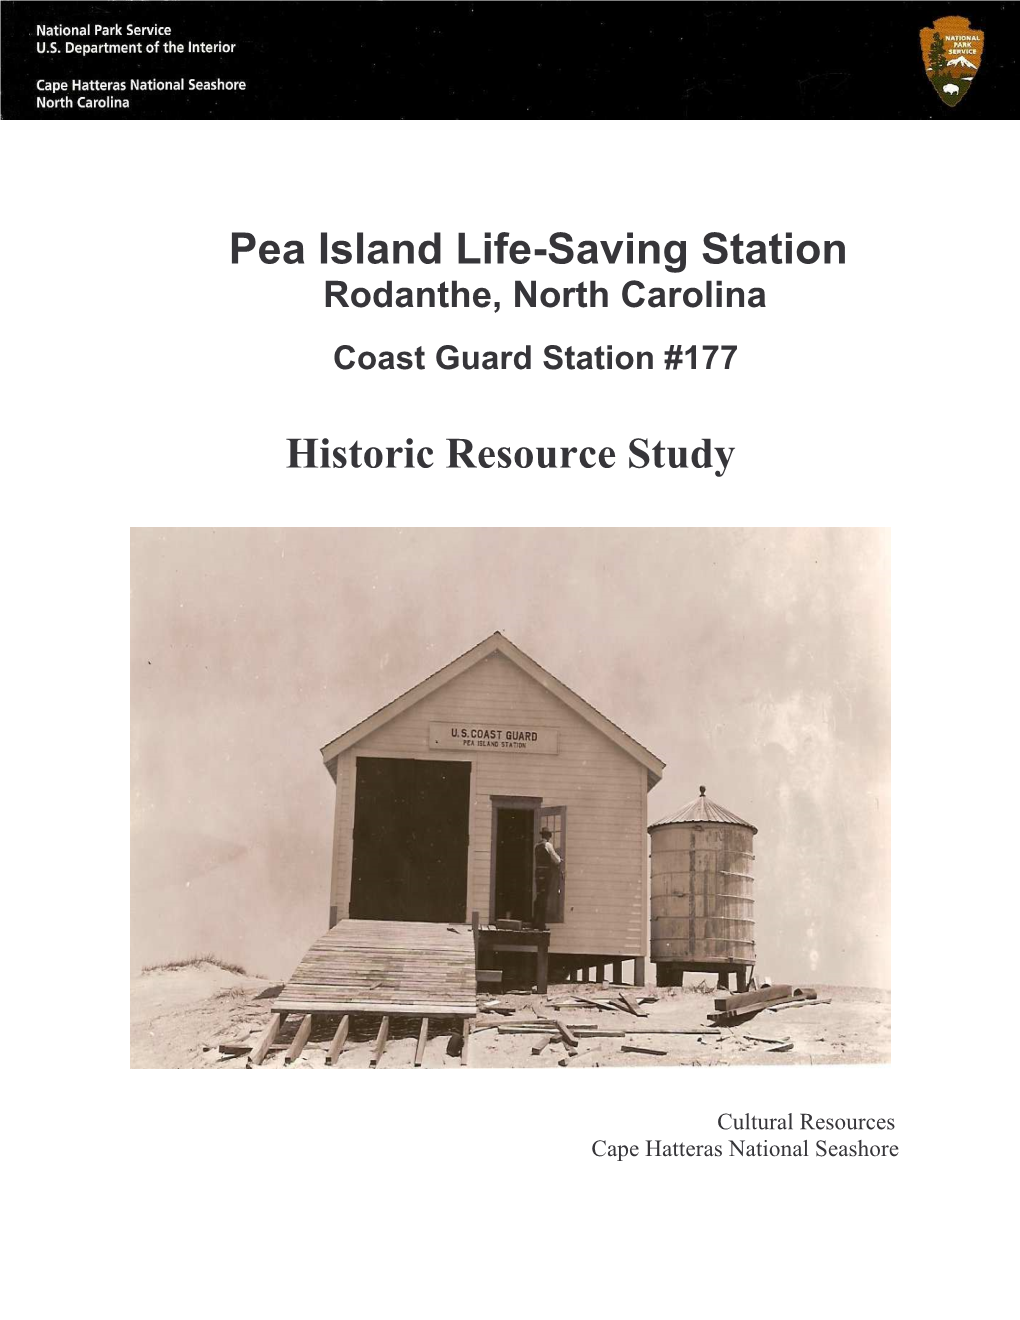 Pea Island Life Saving Station on the Outer Banks